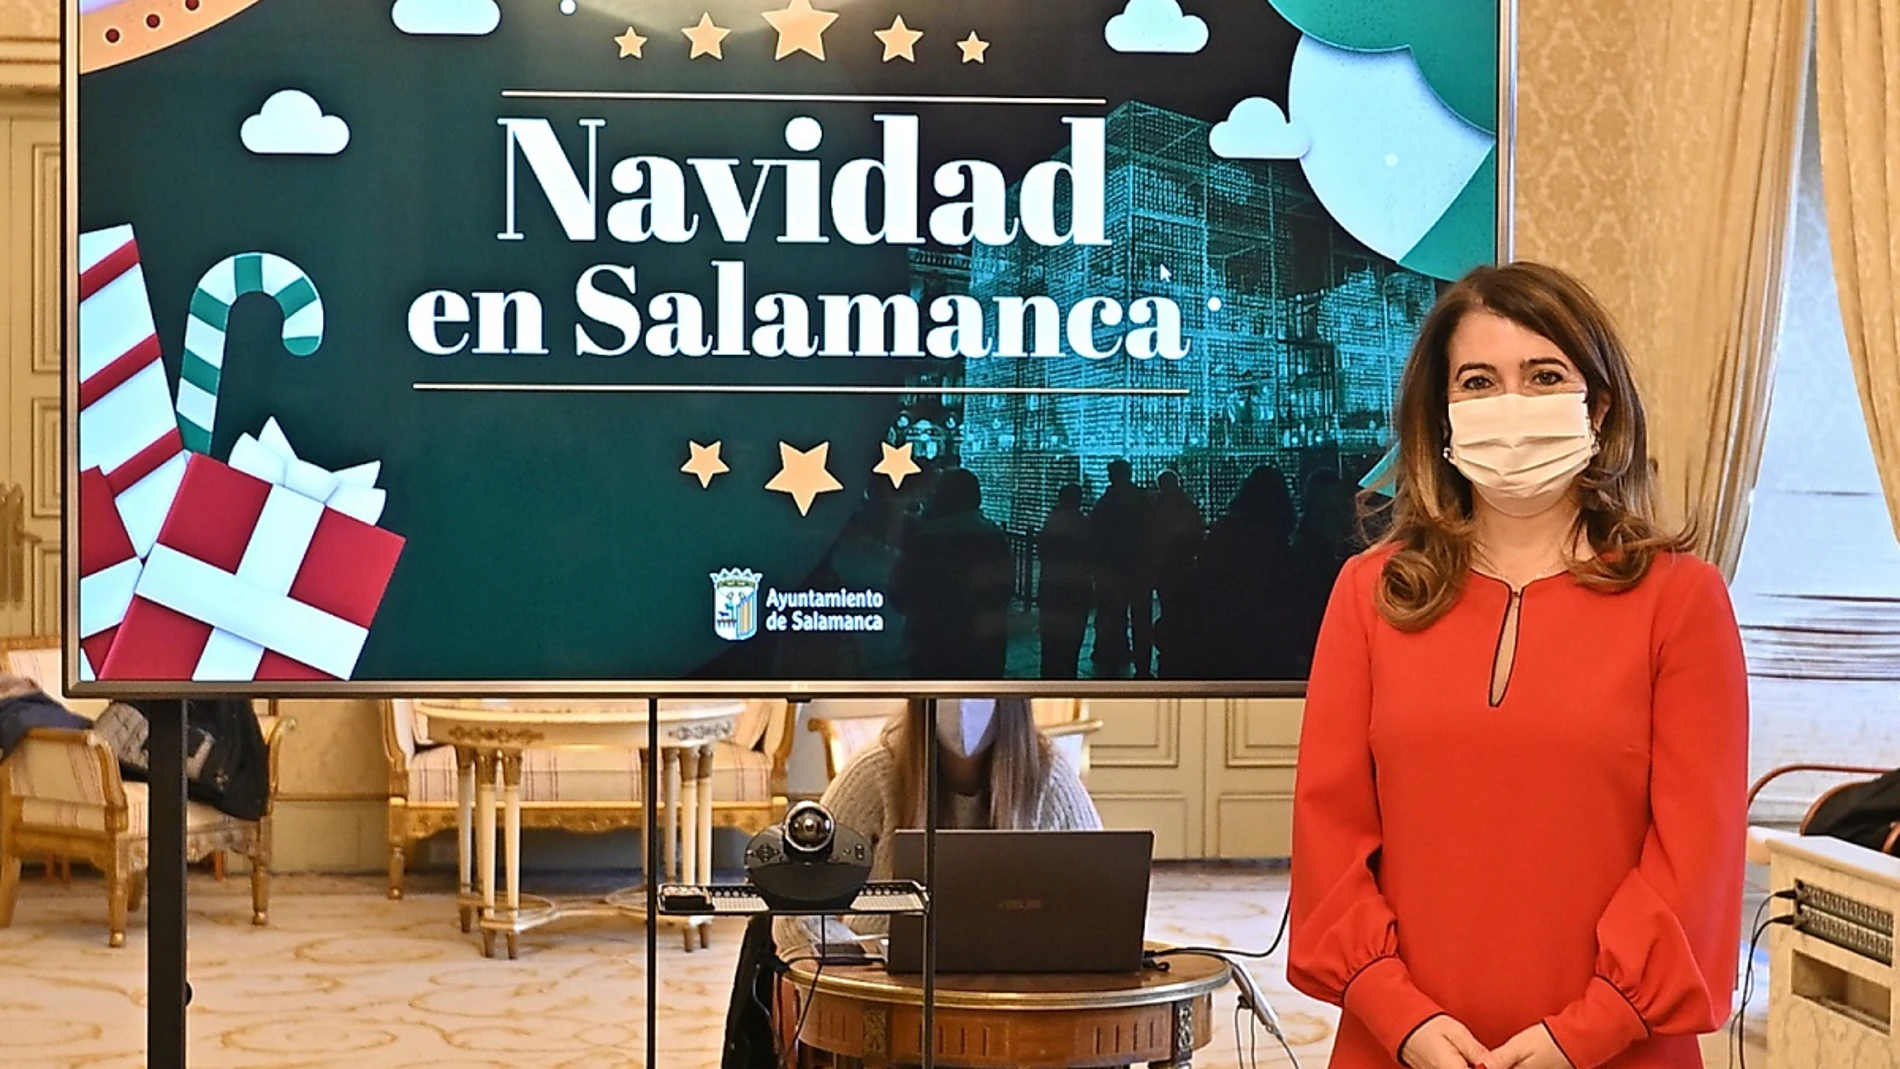 La concejala de Cultura y Festejos del Ayuntamiento de Salamanca, María Victoria Bermejo, presenta la programación